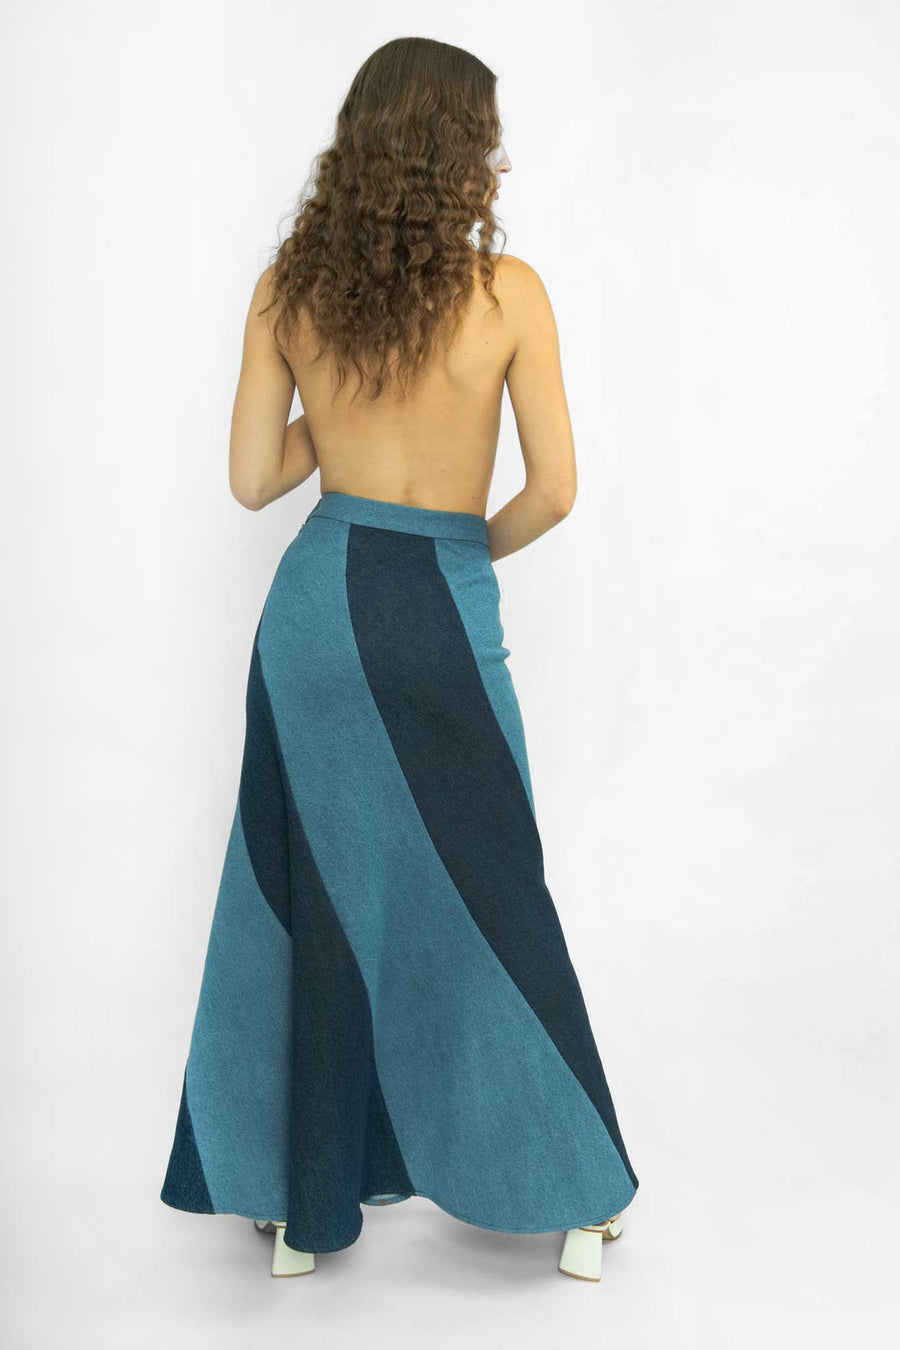 BATSHEVA - Cera Skirt in Blue Denim